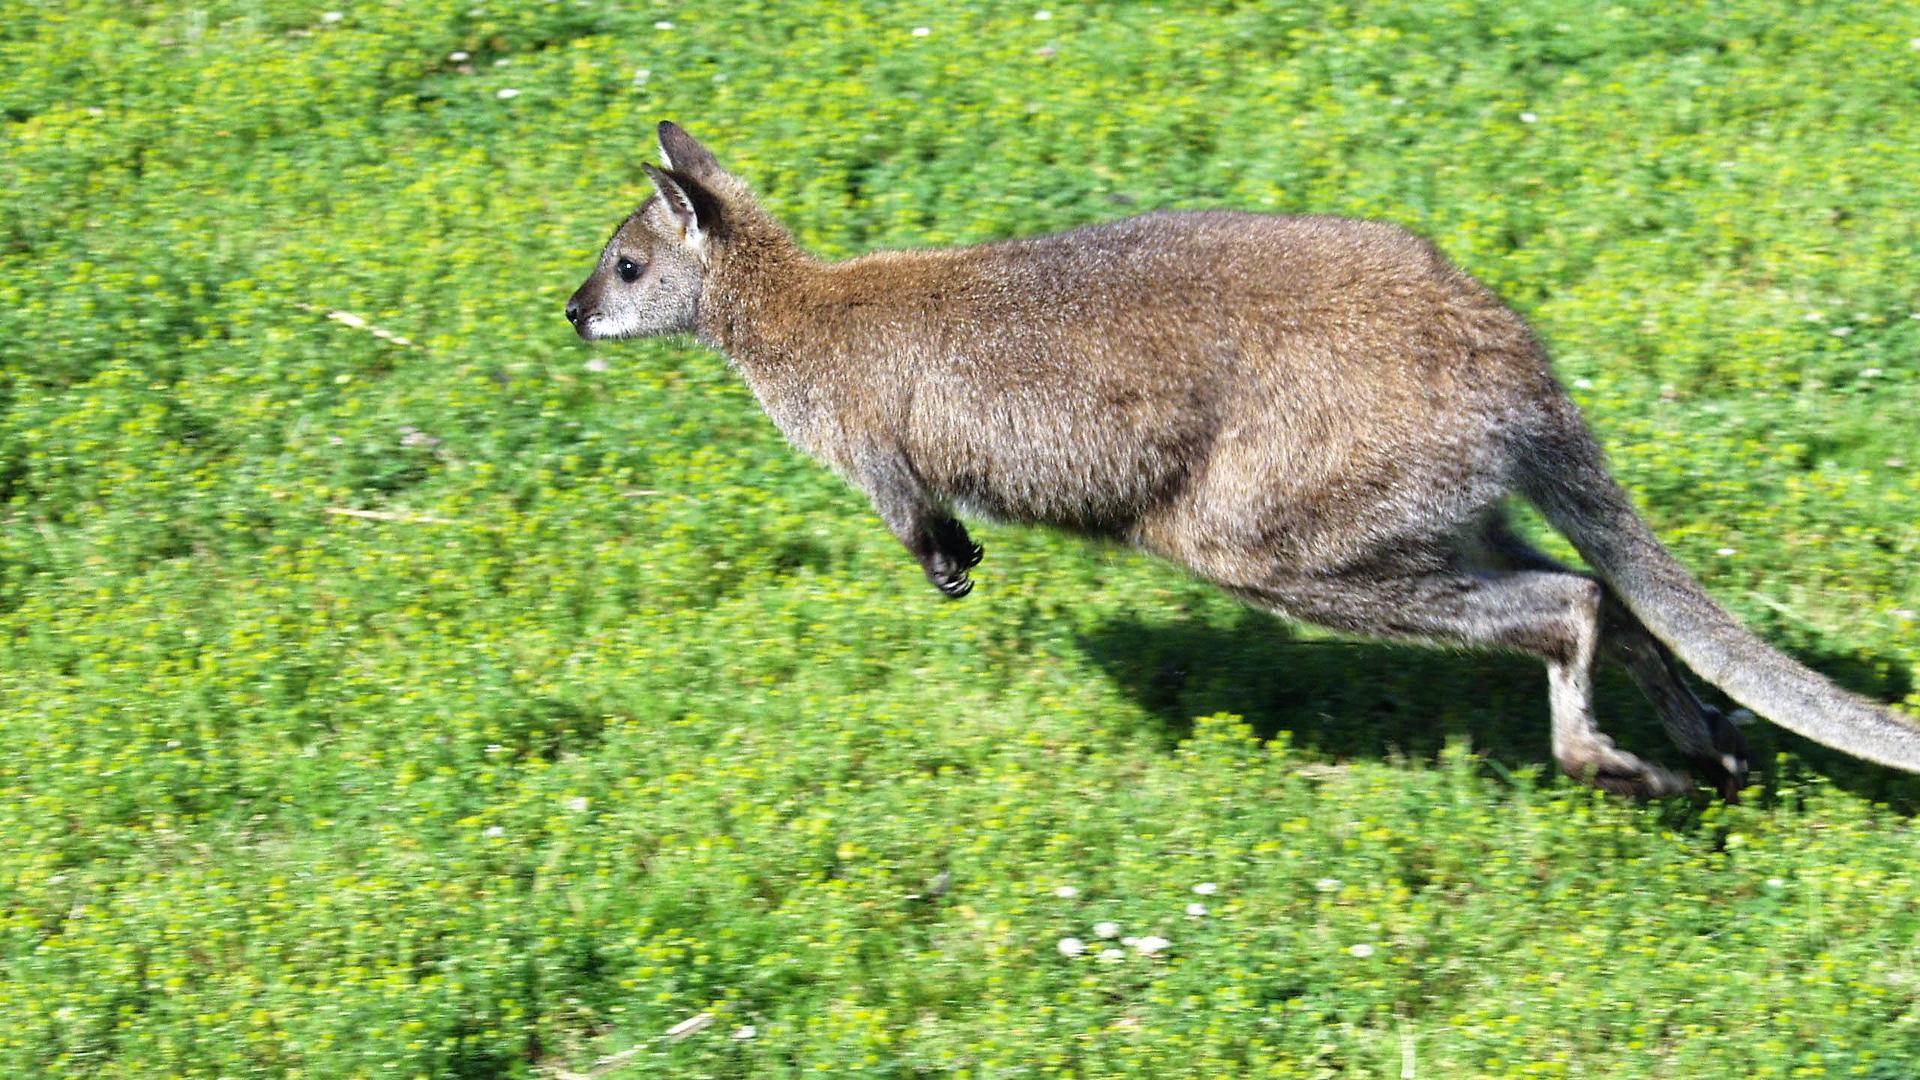 Ausgehüpft, abgehauen oder gar befreit: Dieses Tier war eigentlich auf einem Hof in Wiesental heimisch. Doch jetzt ist das Känguru spurlos verschwunden. 